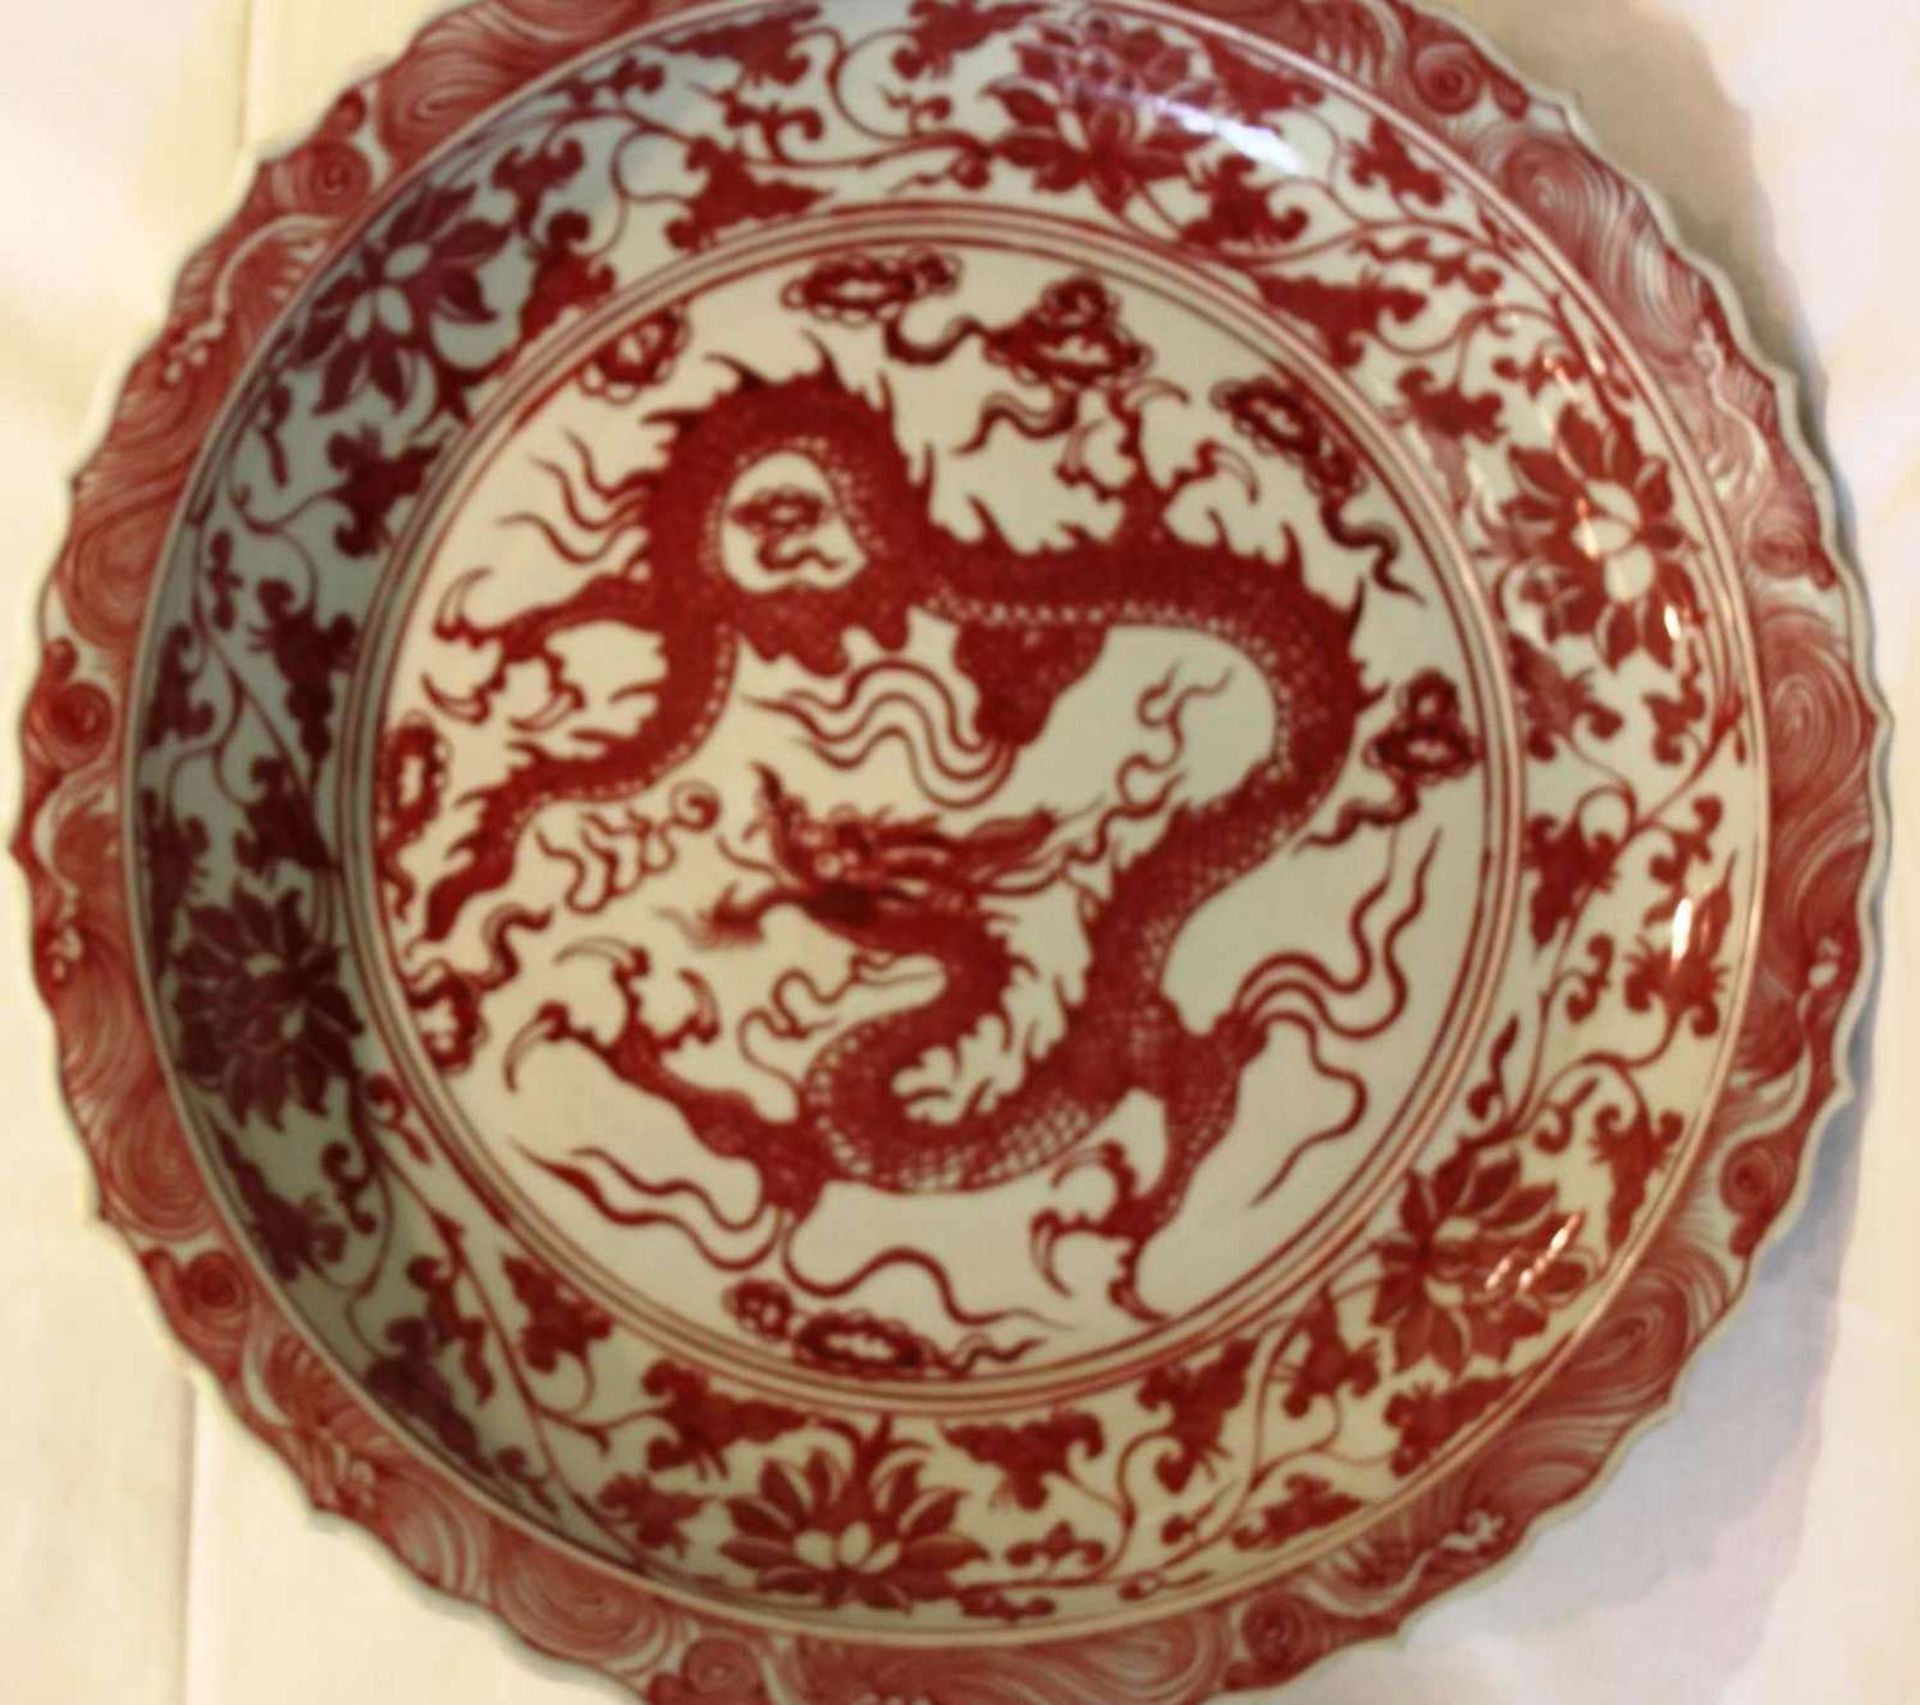 Porzellan Teller, Ming-Dynastie-Stil Unterglasur Kupfer Technik, Drachen mit Lotus. Durchmesser